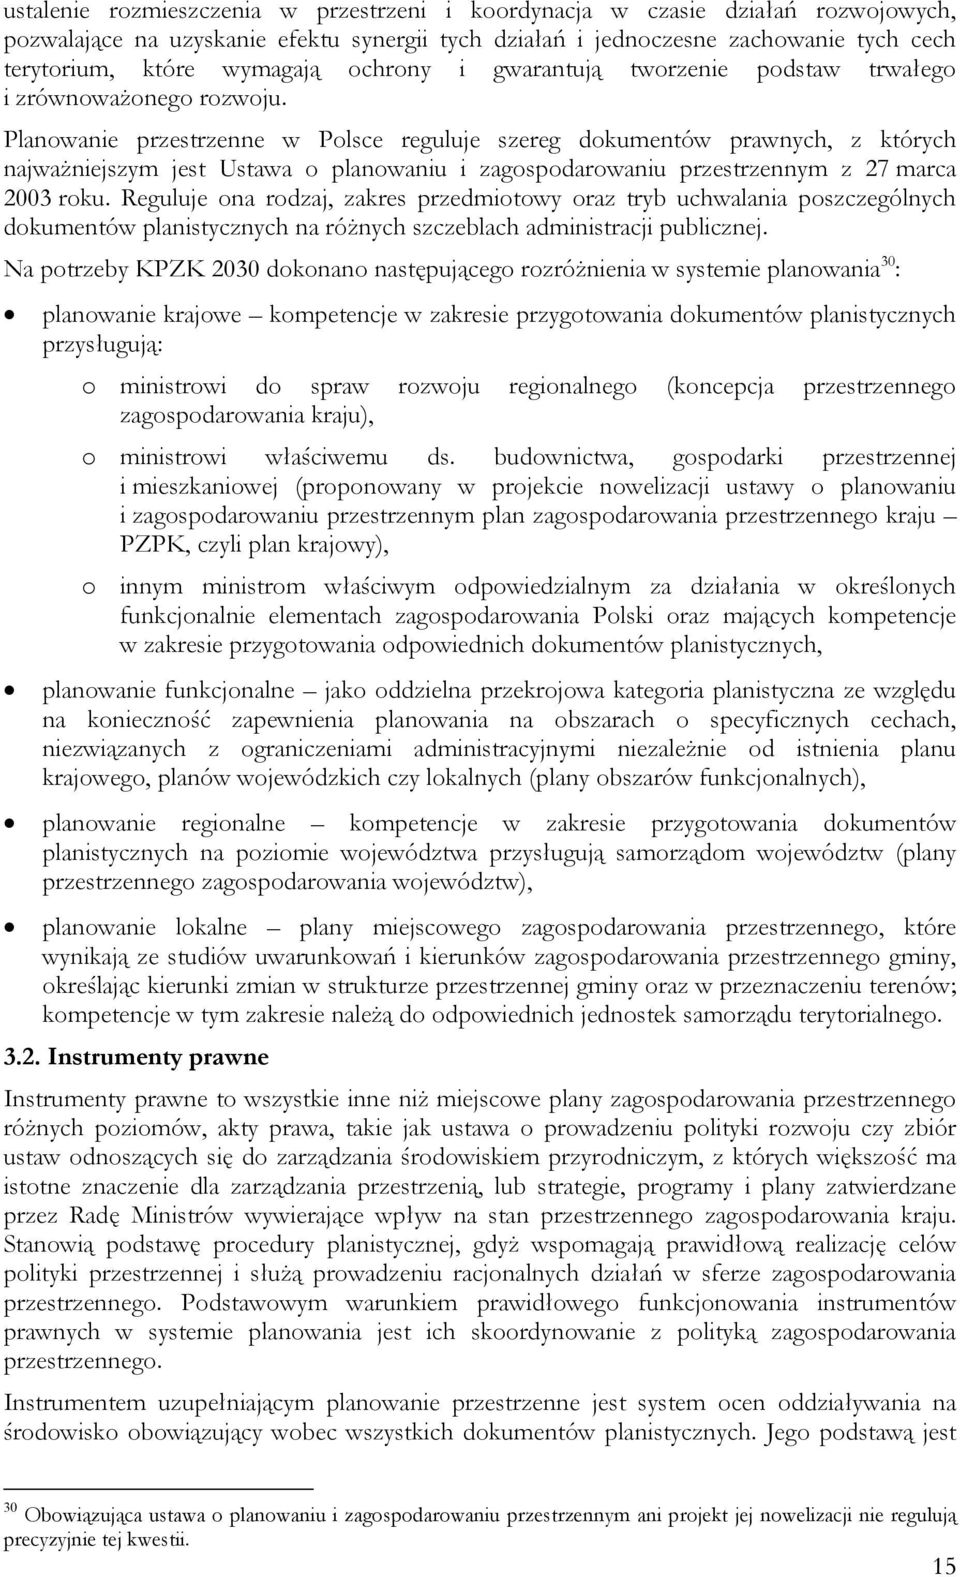 Planowanie przestrzenne w Polsce reguluje szereg dokumentów prawnych, z których najważniejszym jest Ustawa o planowaniu i zagospodarowaniu przestrzennym z 27 marca 2003 roku.